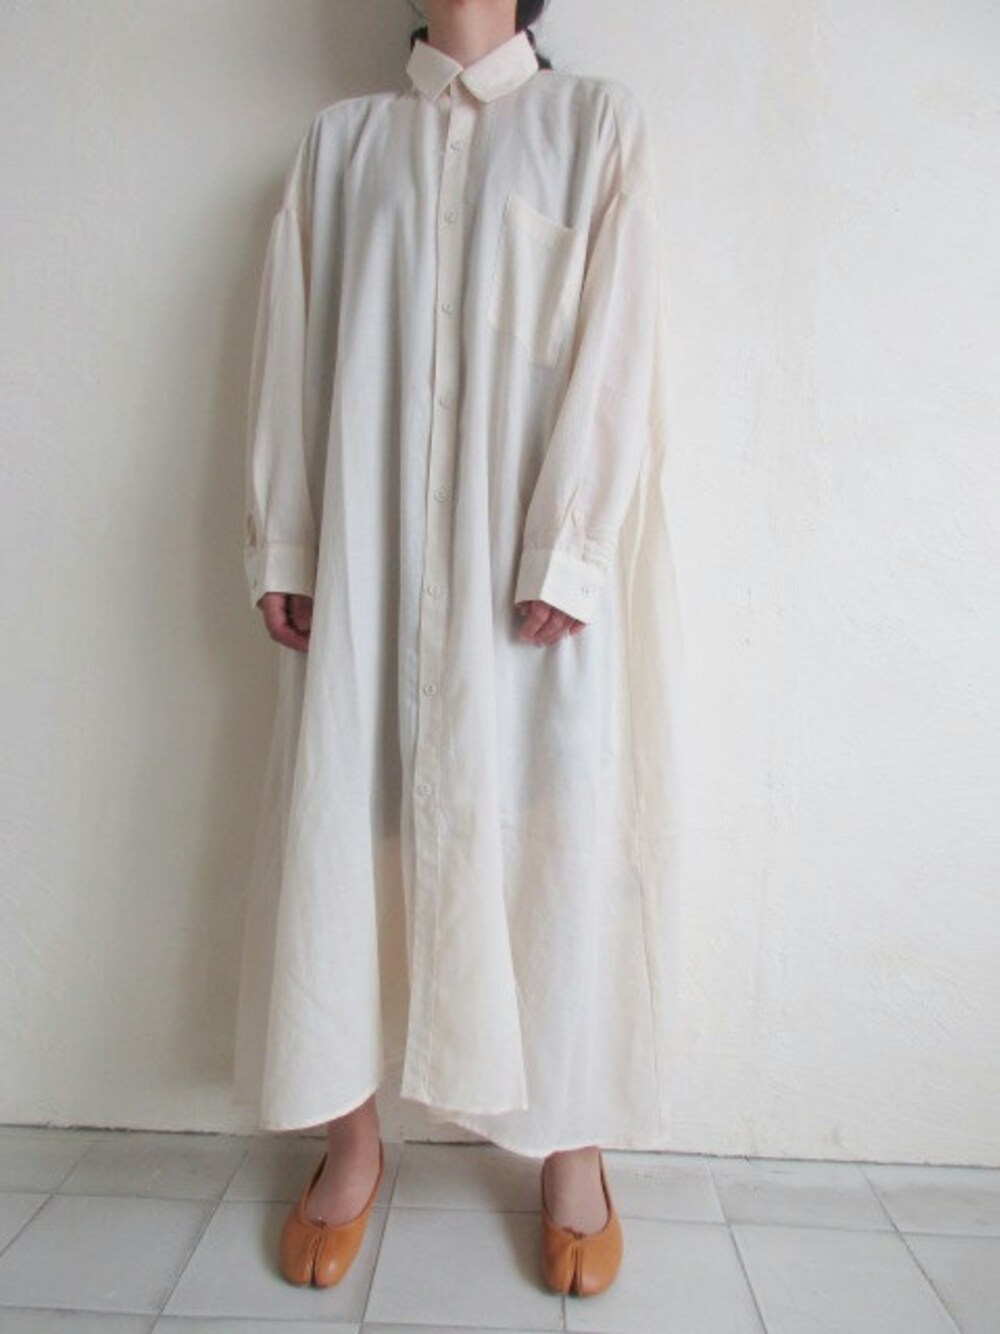 TITY niigataさんの「bedsidedrama 　 ウィッチドレープマキシシャツ・ホワイト（bedsidedrama）」を使ったコーディネート